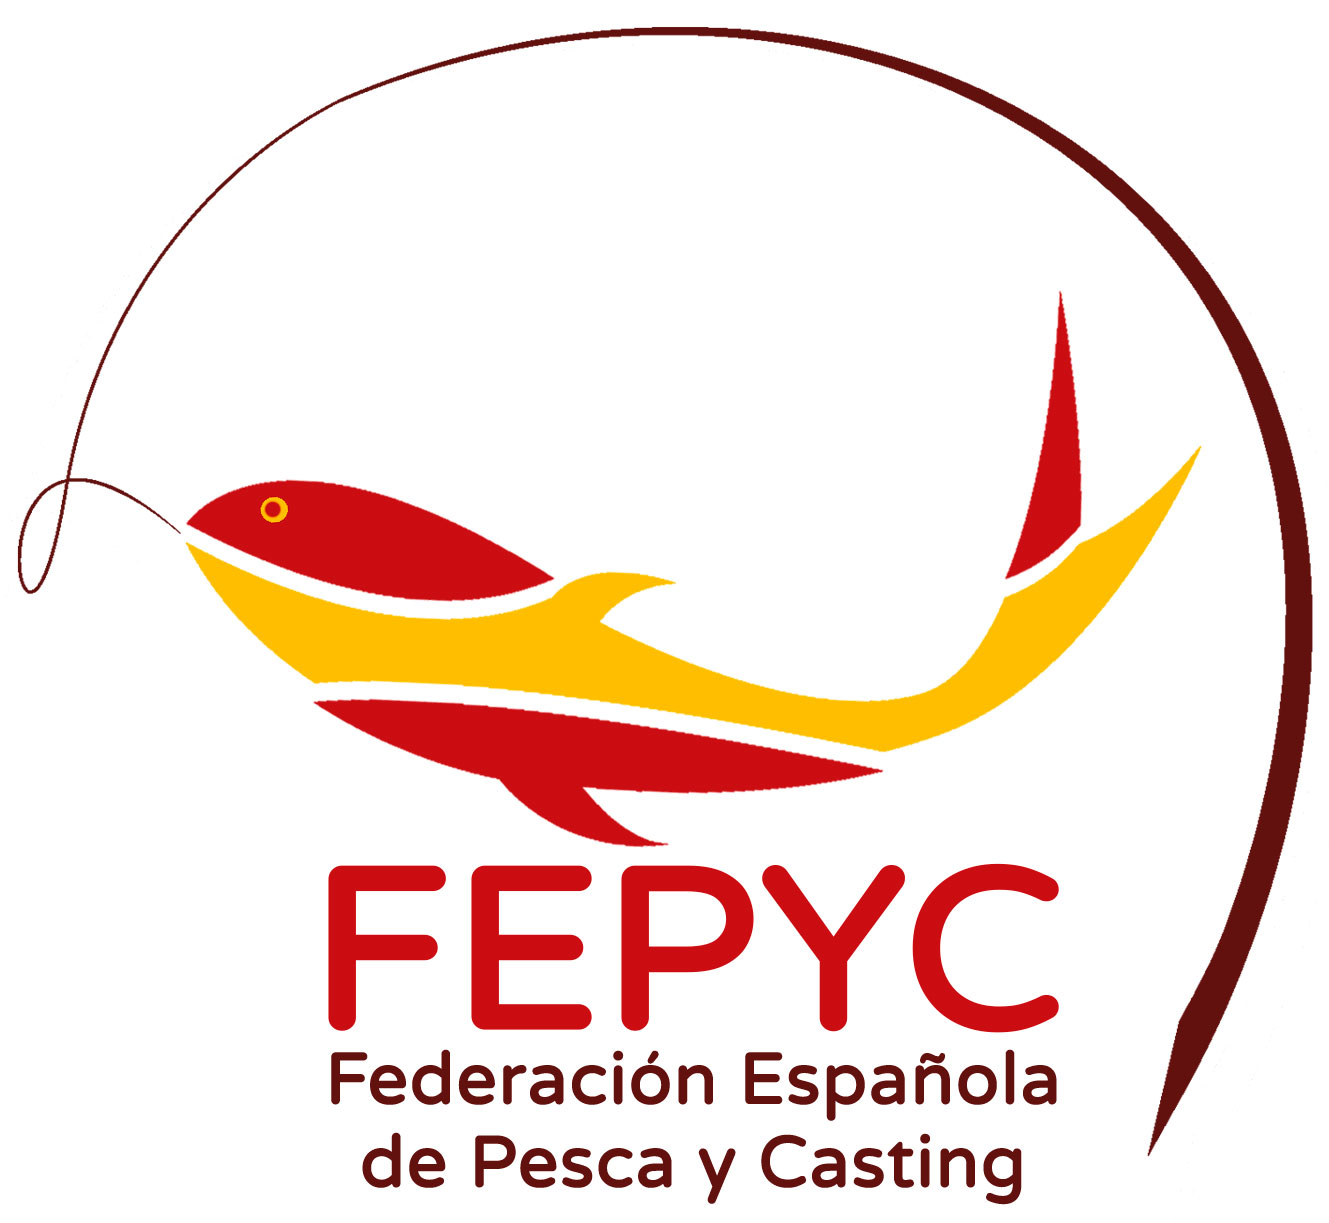 Federacion Española de Pesca y Casting